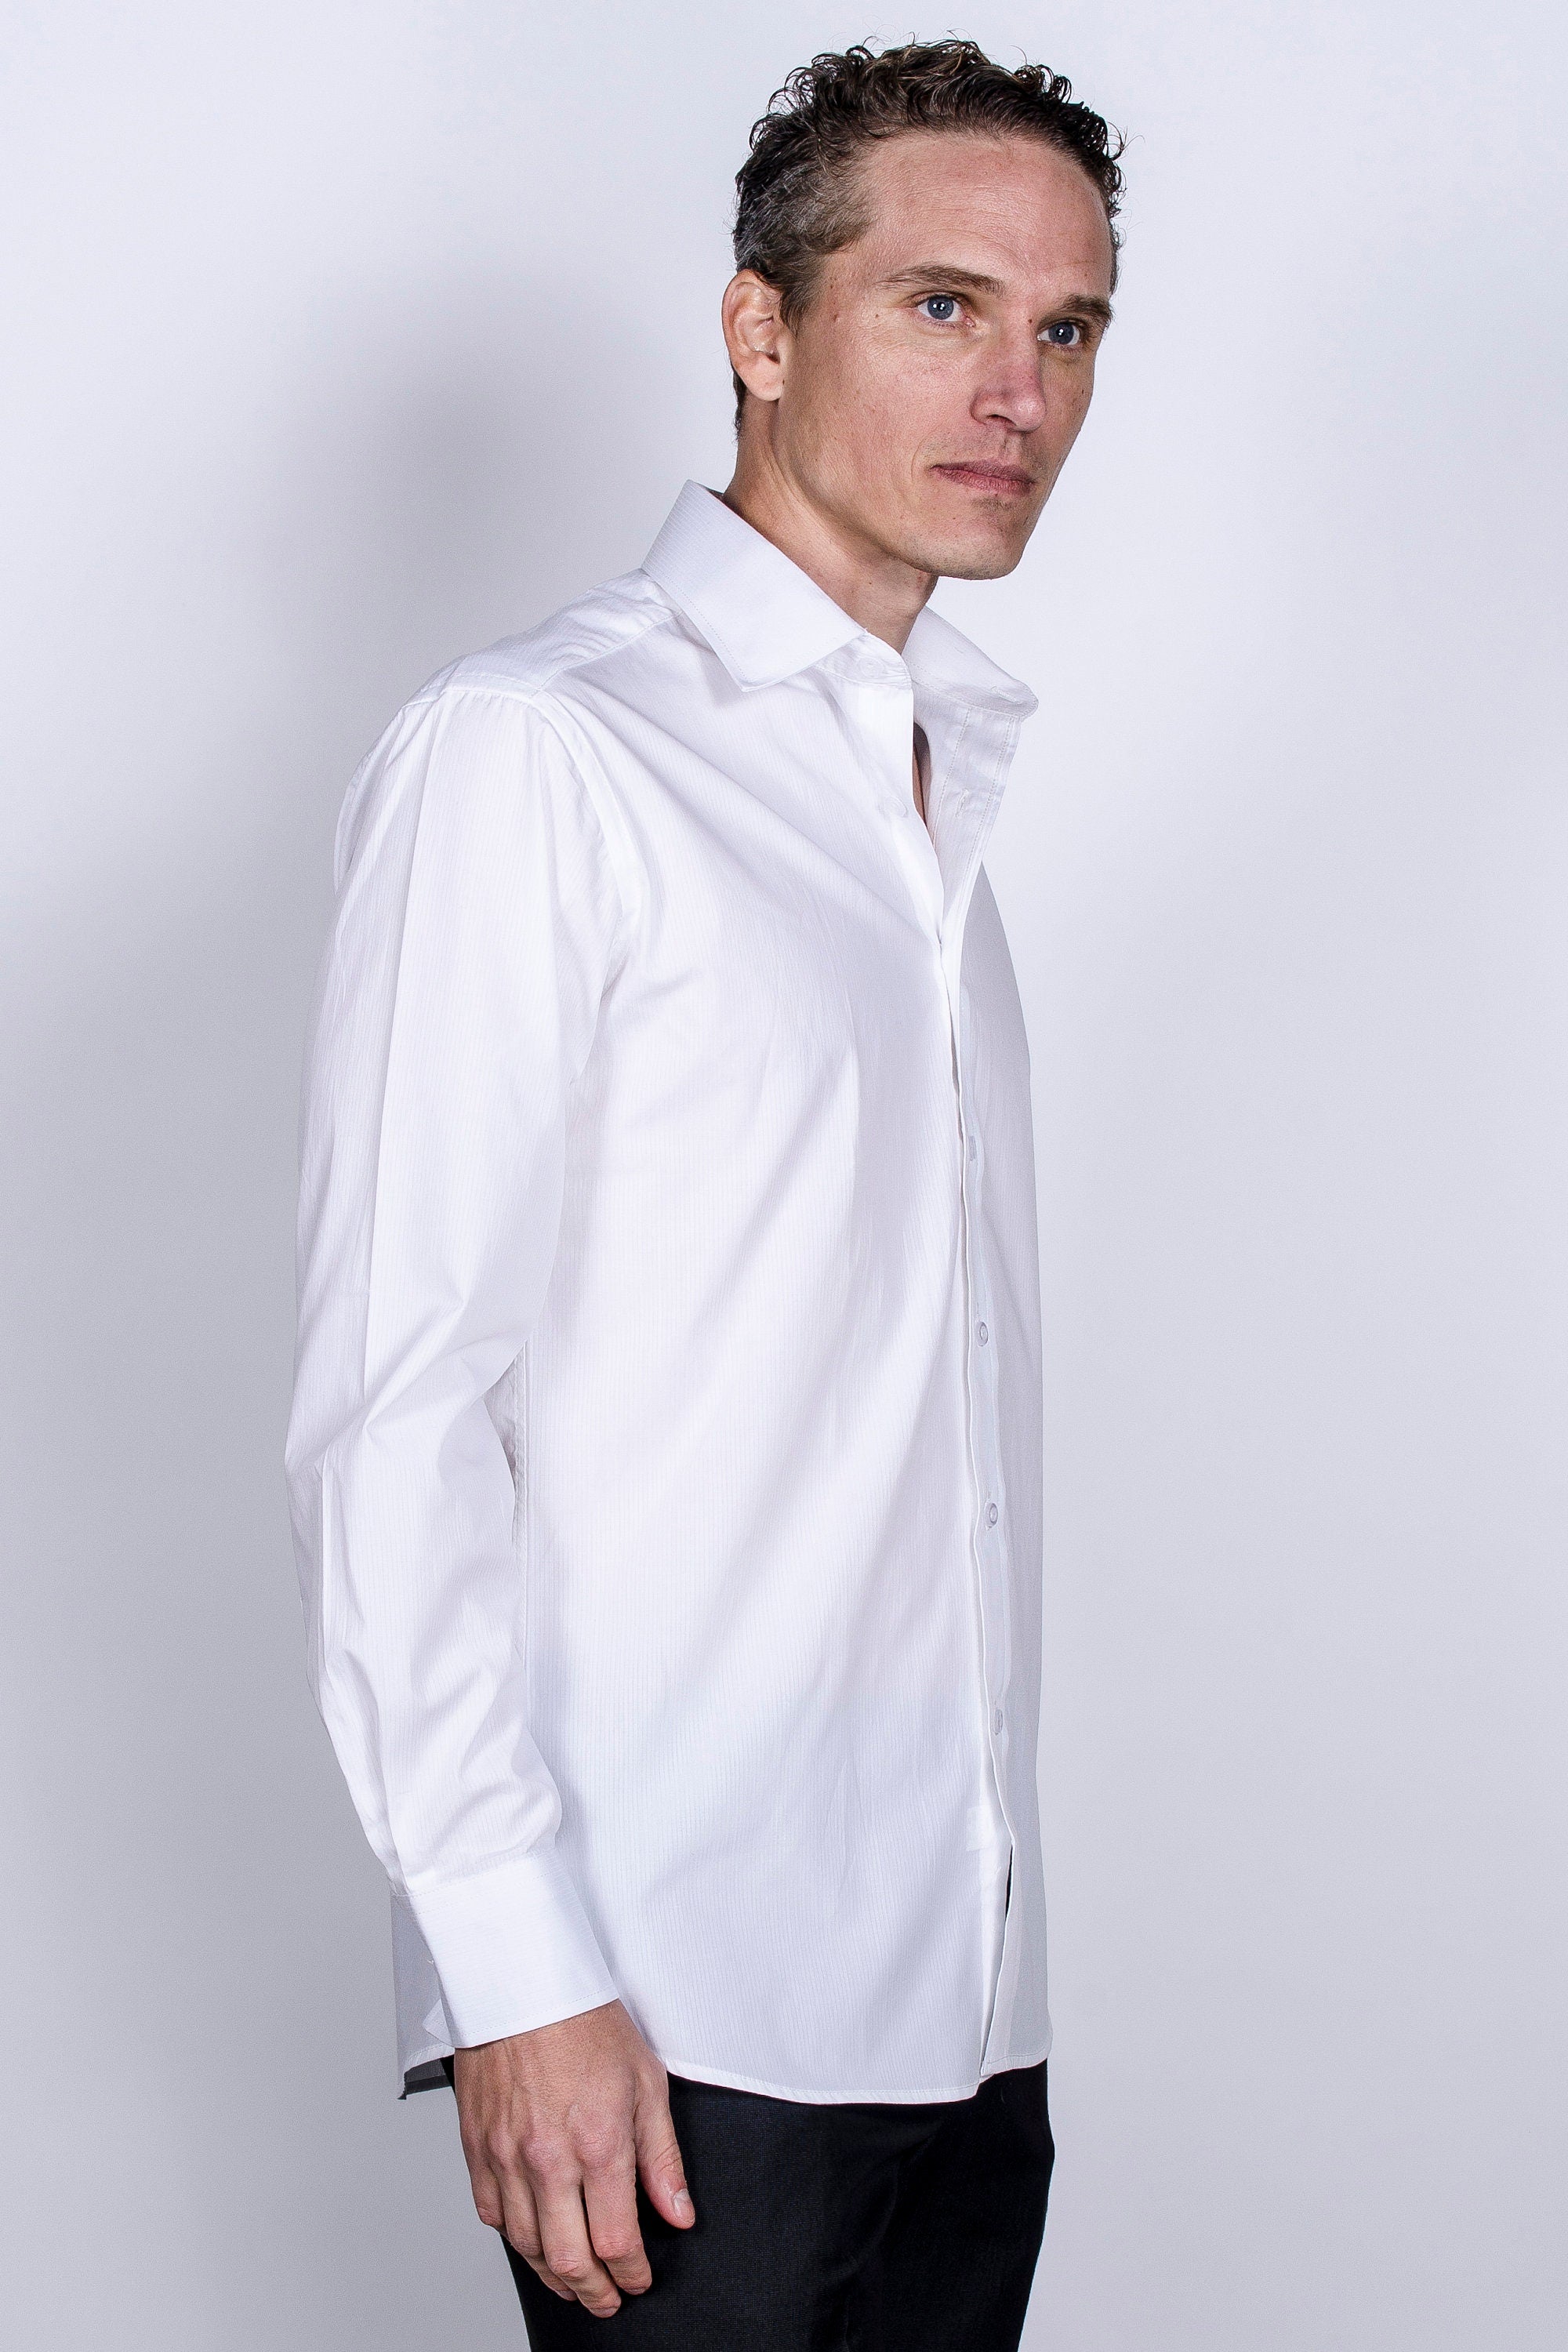 KOVROS Men's Premium Designer Slim Fit Dress Shirt, White | KOVROS